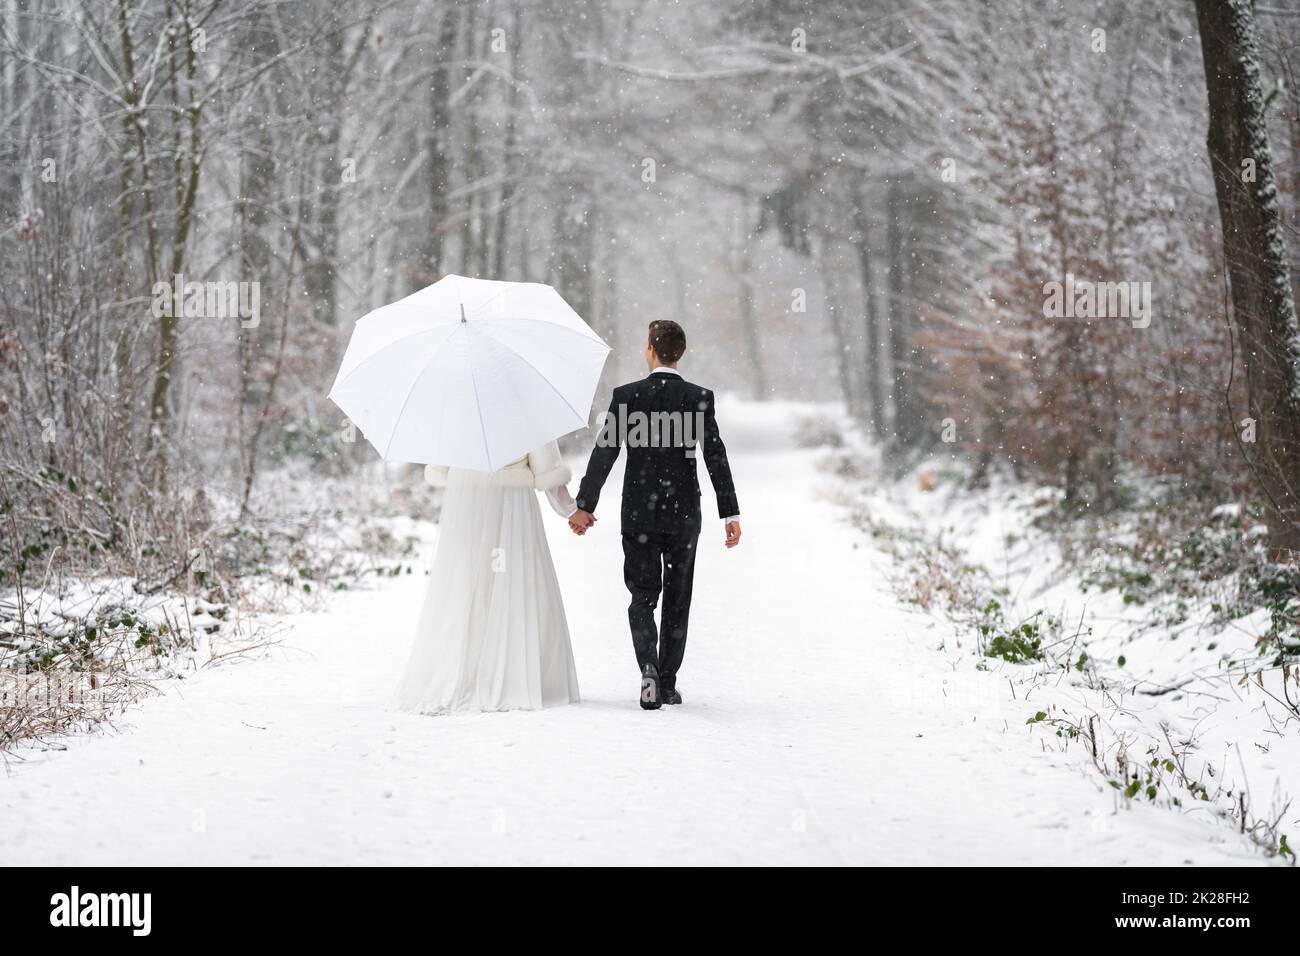 Brautpaar in Hochzeitskleider im winterverschneiten Wald auf einem Spaziergang mit einem Regenschirm Stockfoto